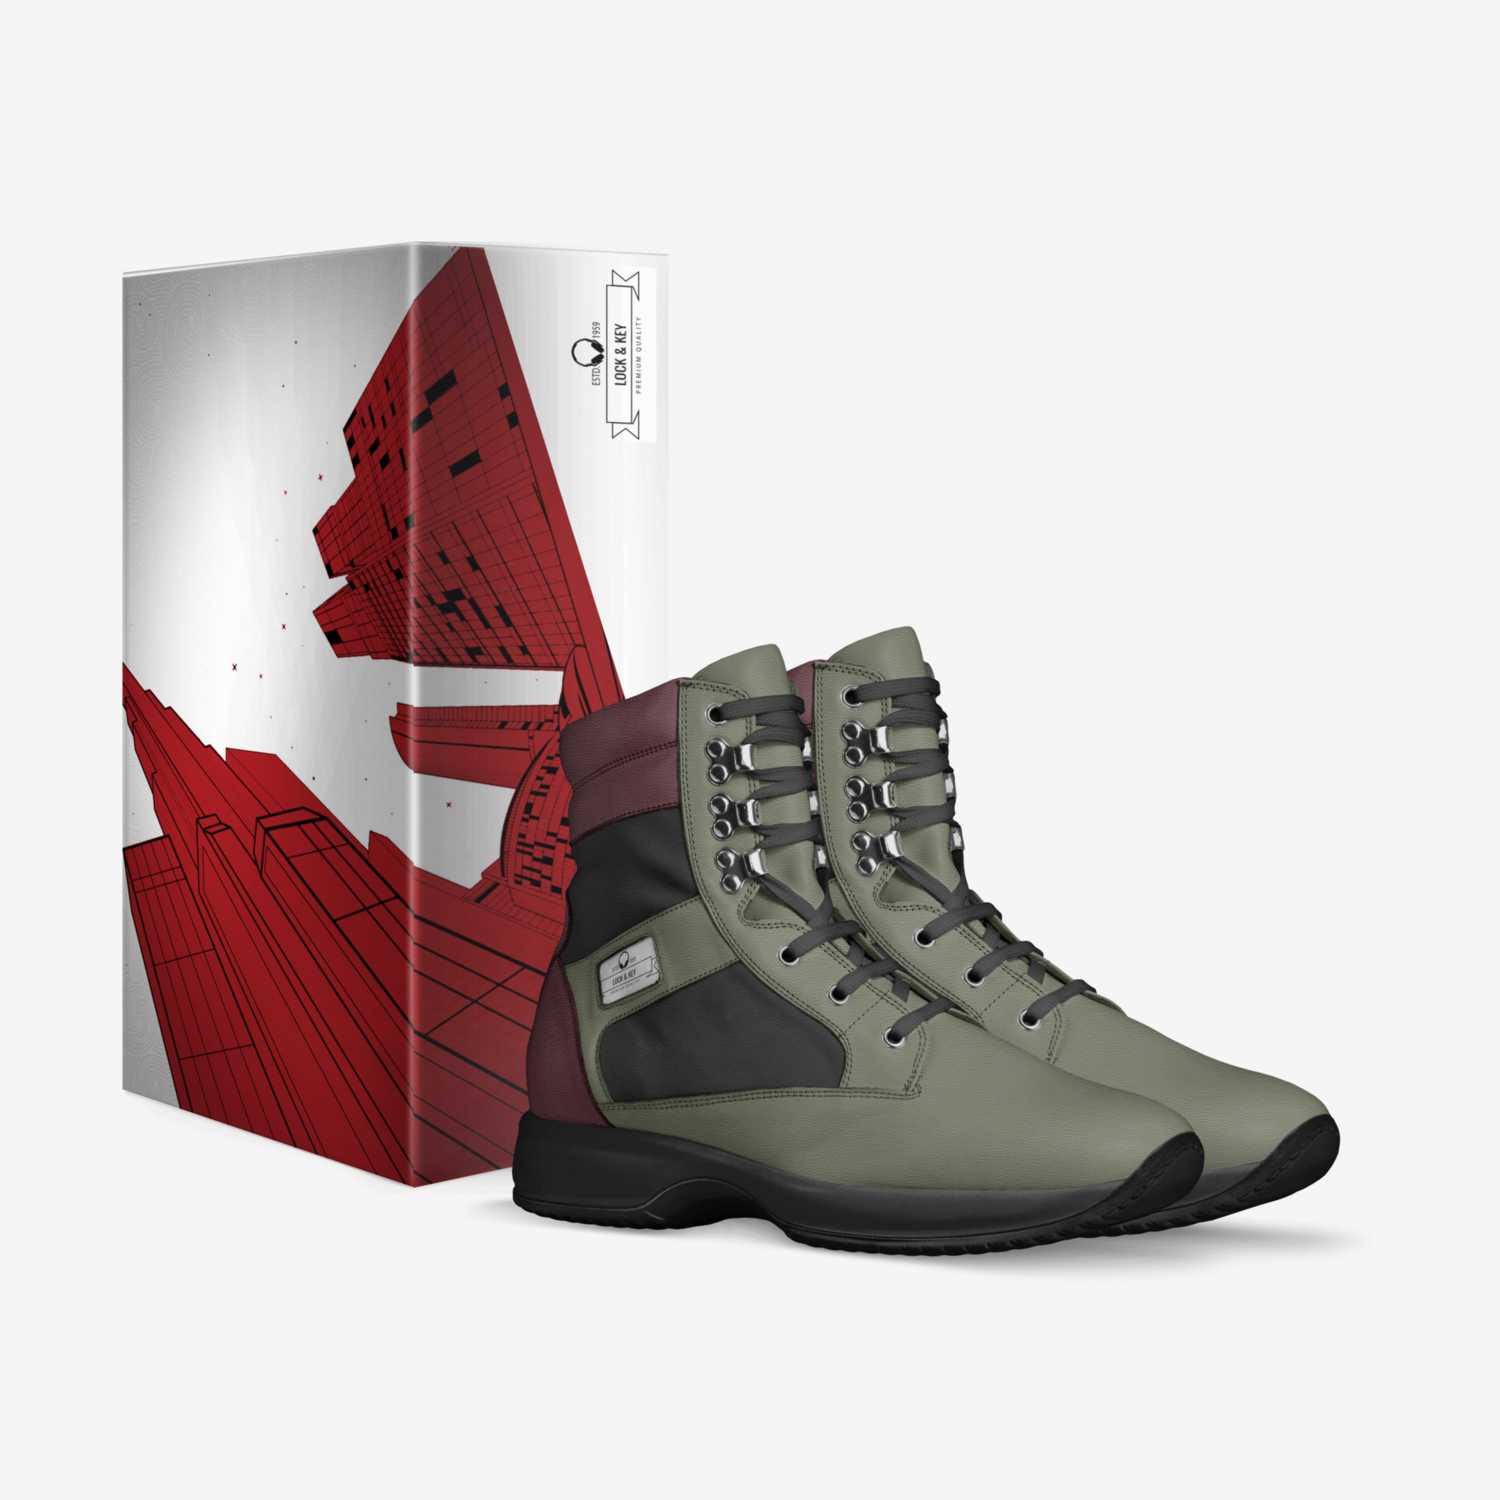 Olanda custom made in Italy shoes by Olanda Robbins | Box view